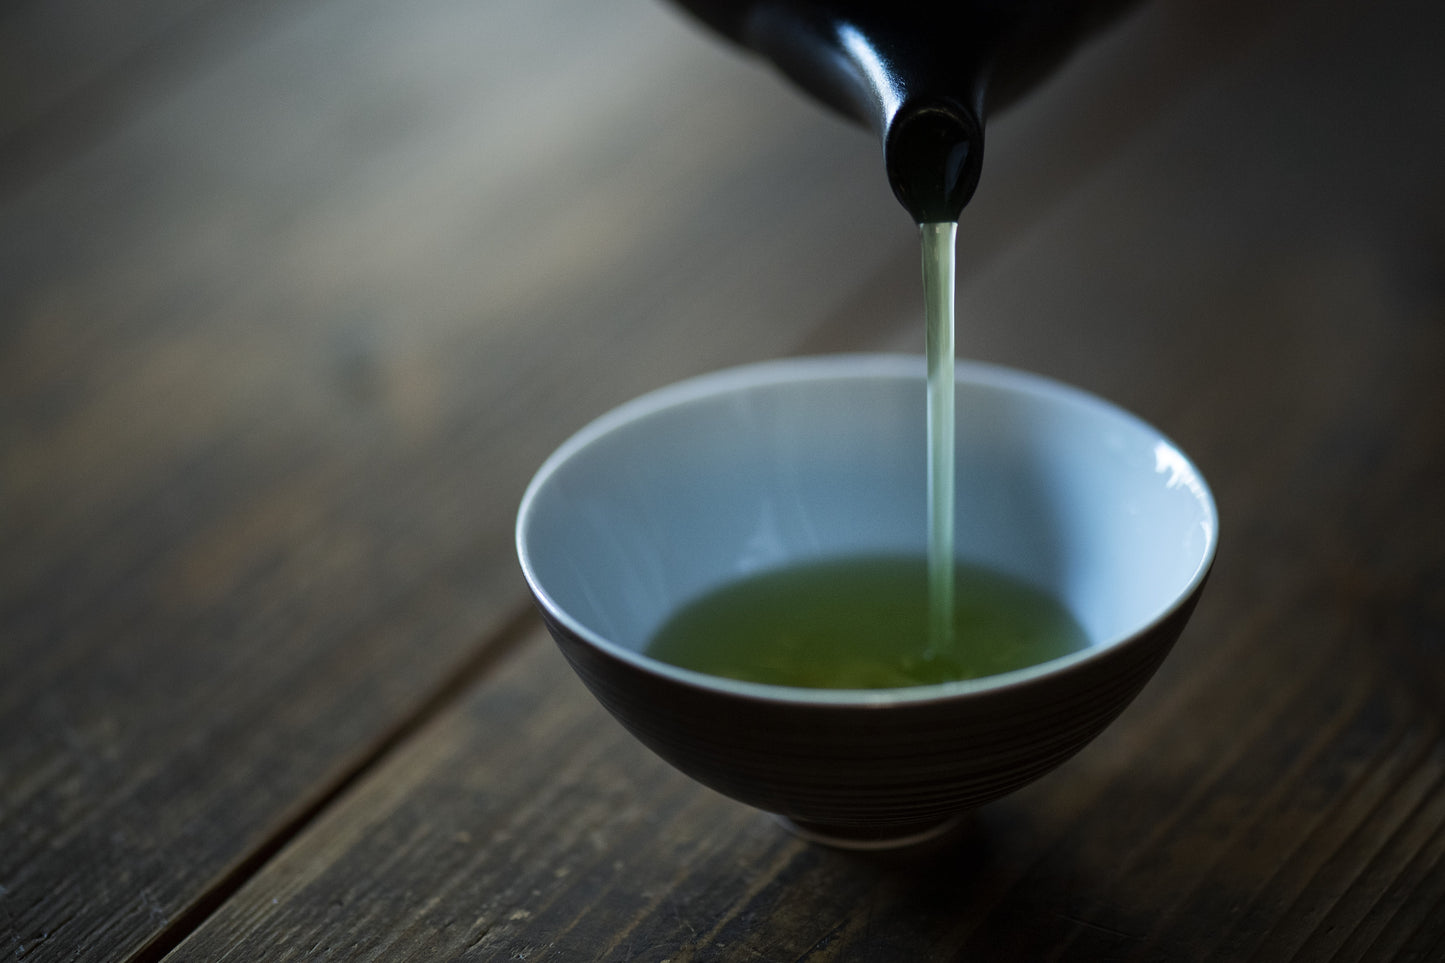 嬉野玉緑茶